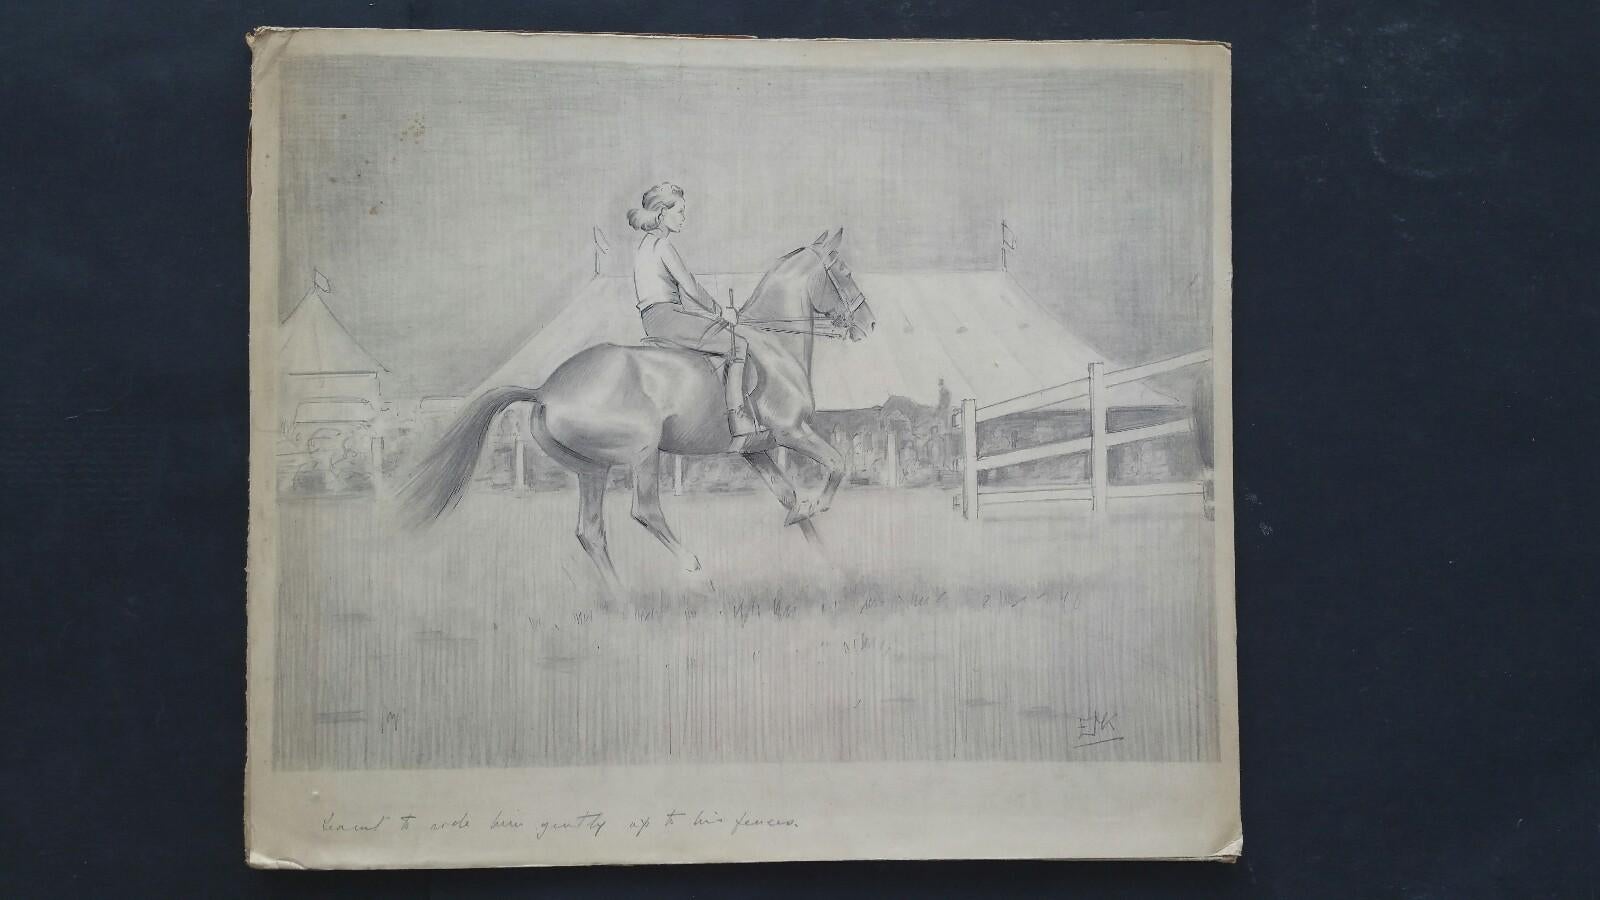 Englische Pferdesport-Dame des 20. Jahrhunderts auf Pferd, 1930er Jahre – Art von Eric Meade-King